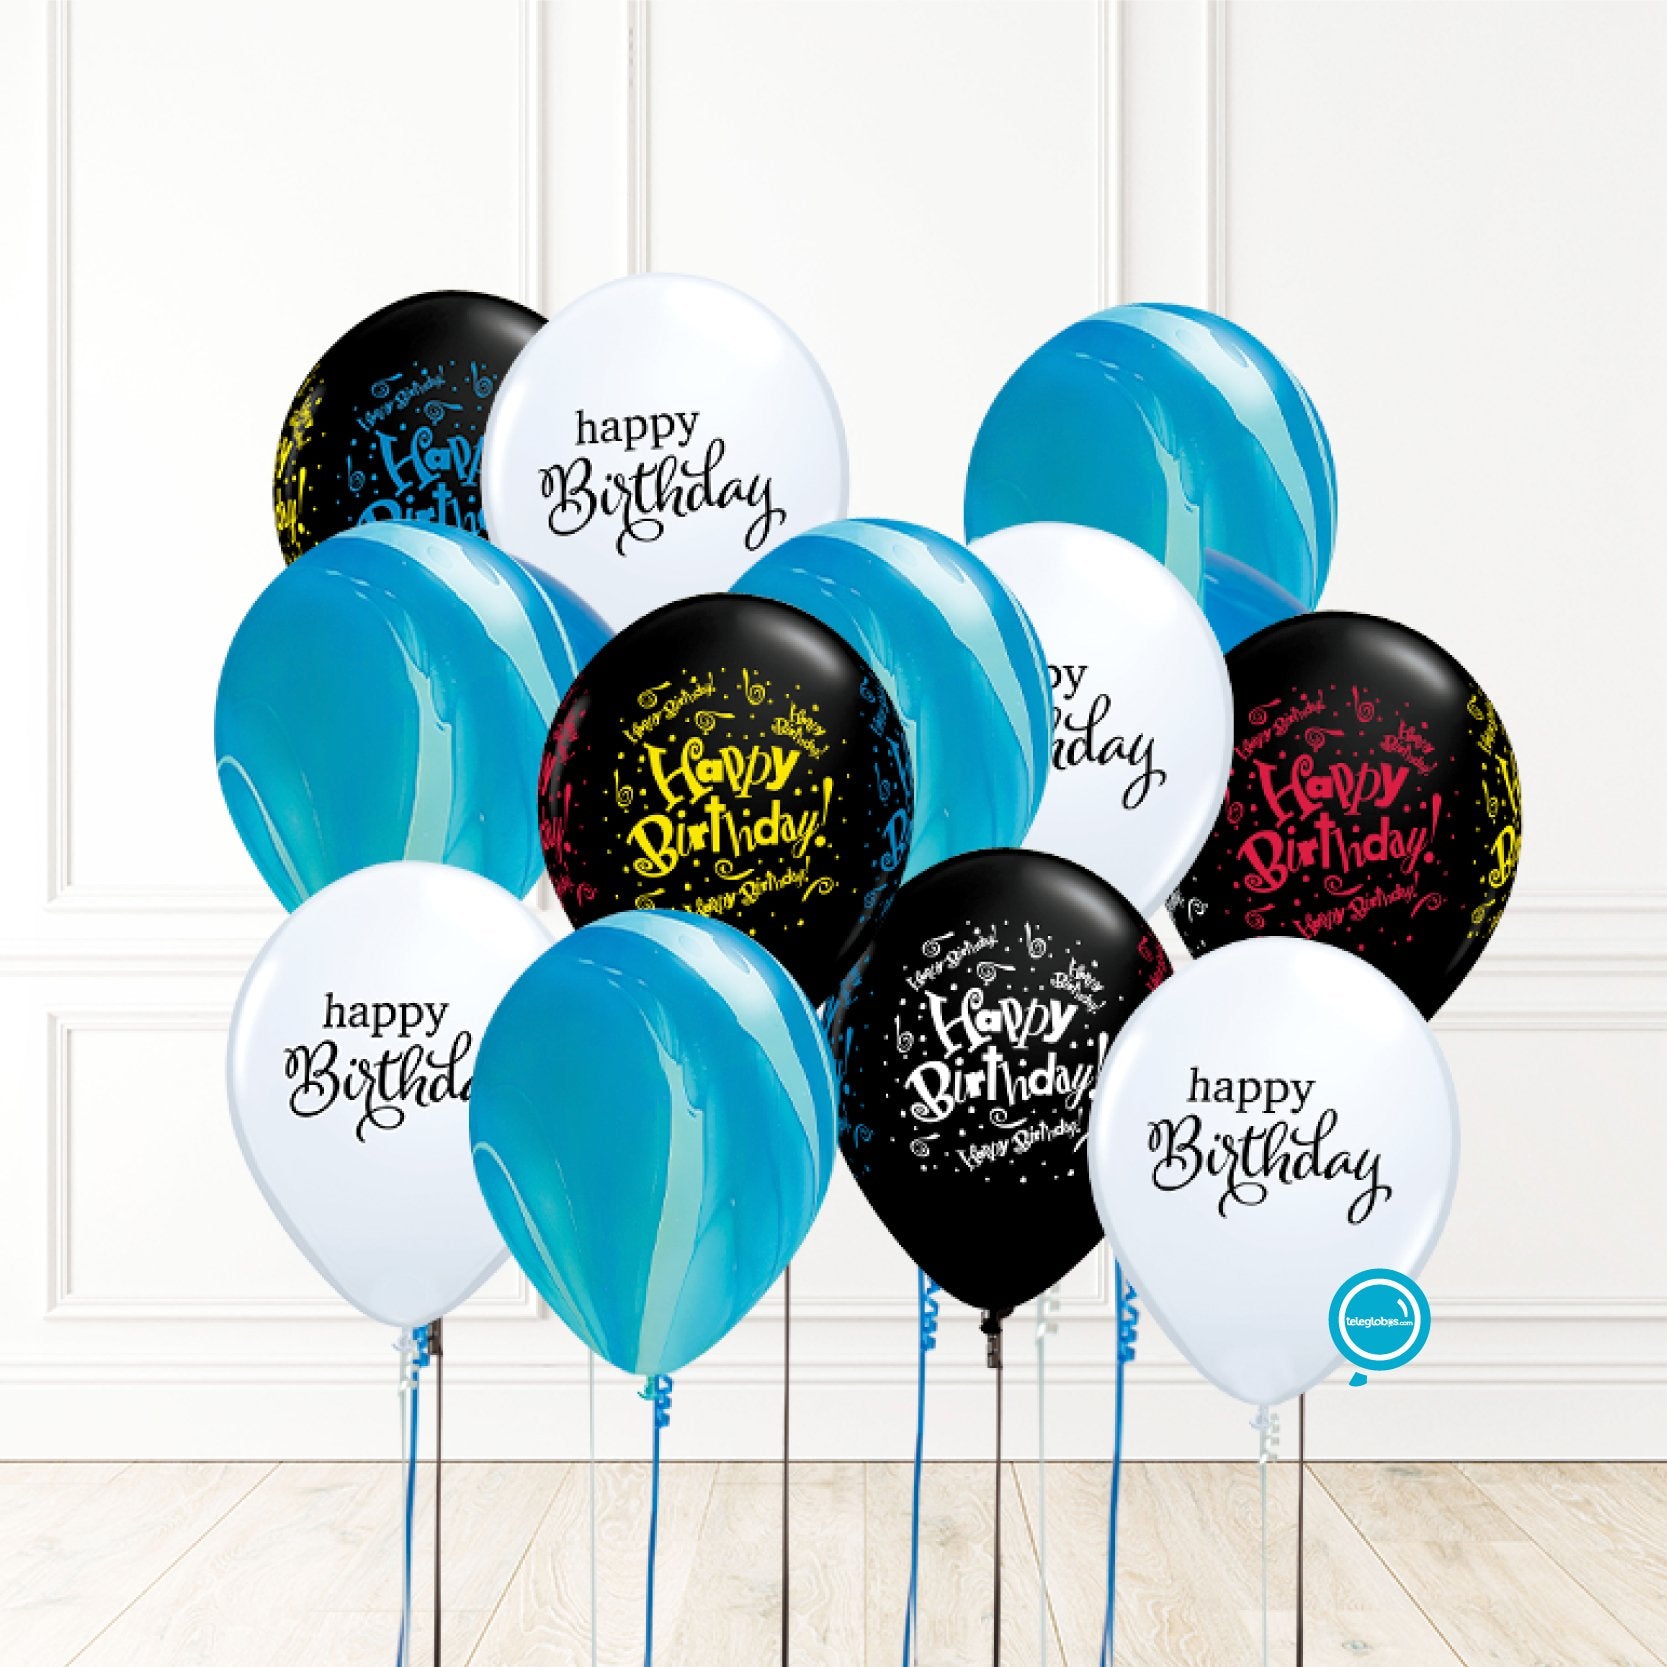 12 globos inflados con helio -Birthday & Ágata- Bio* -RAC004- | Globos y Regalos Teleglobos.com.mx.